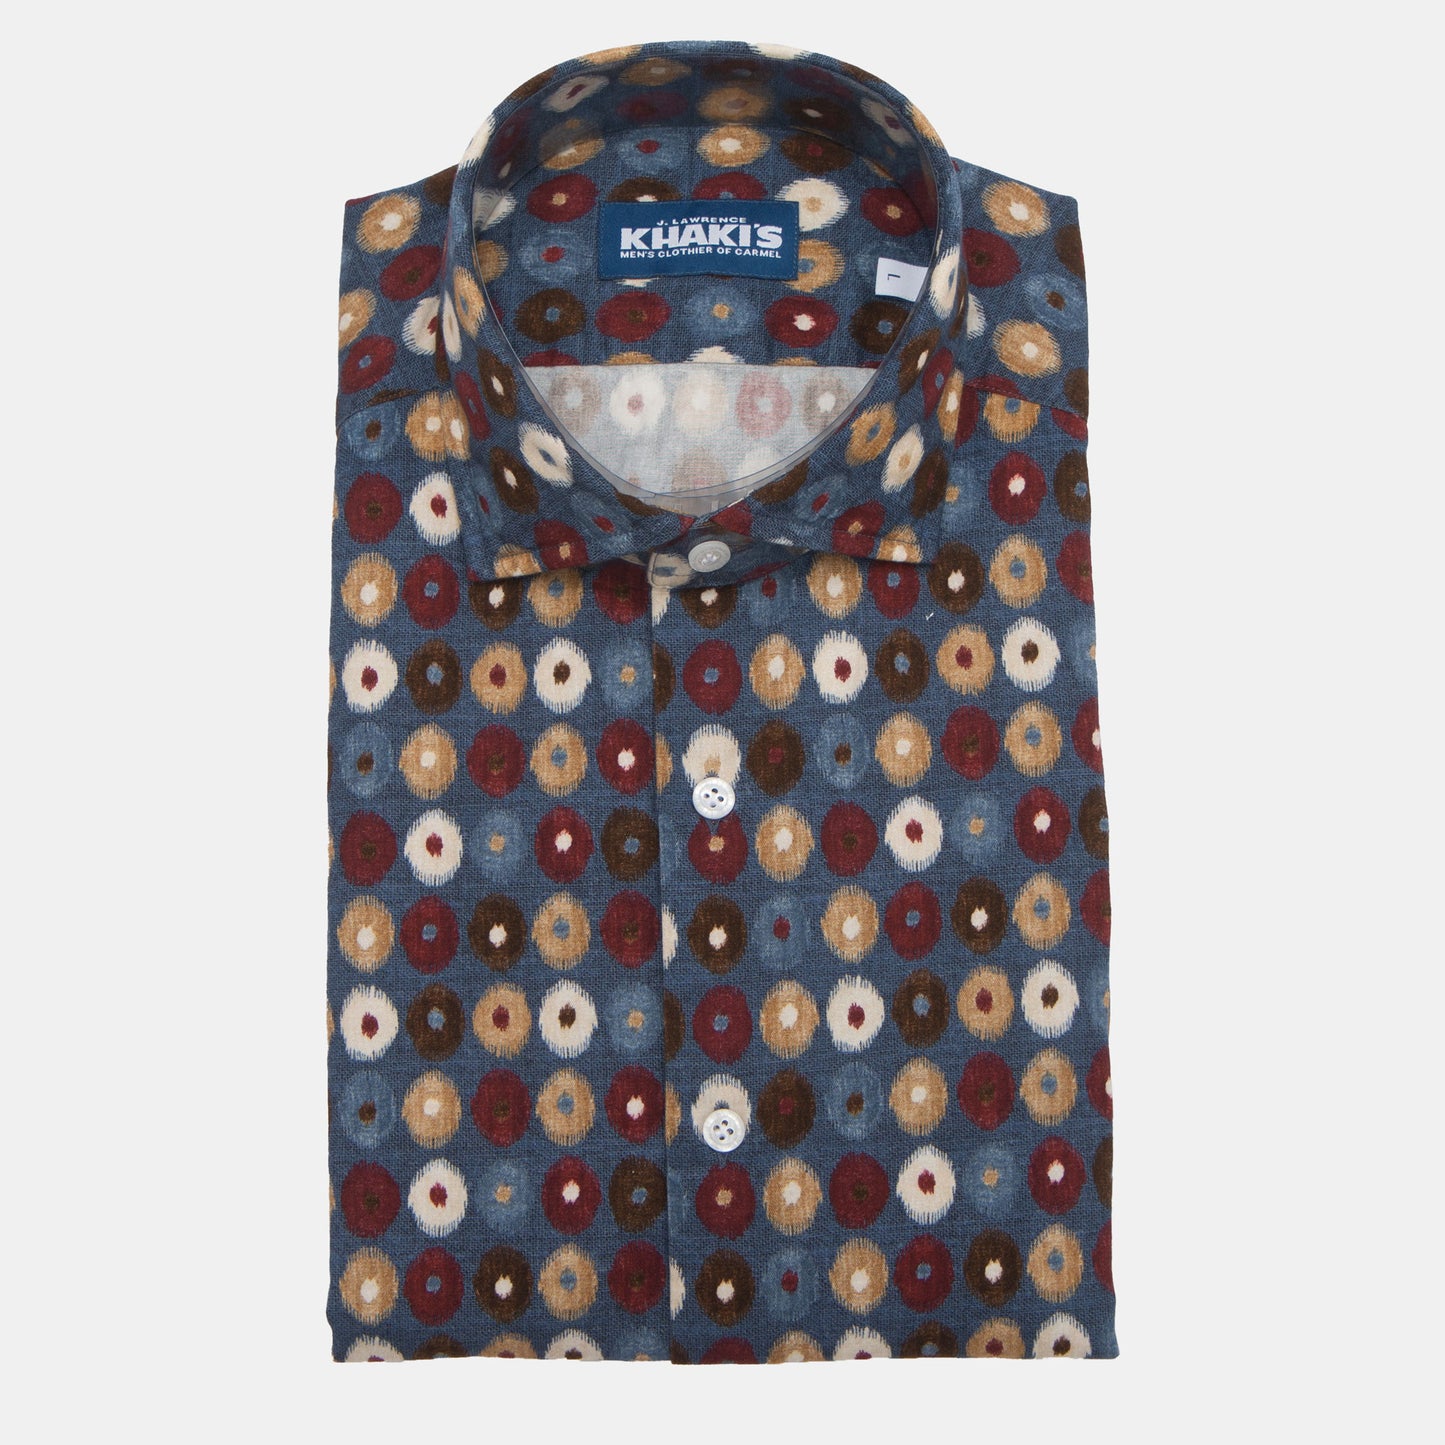 Khaki’s of Carmel - Teal Print Shirt